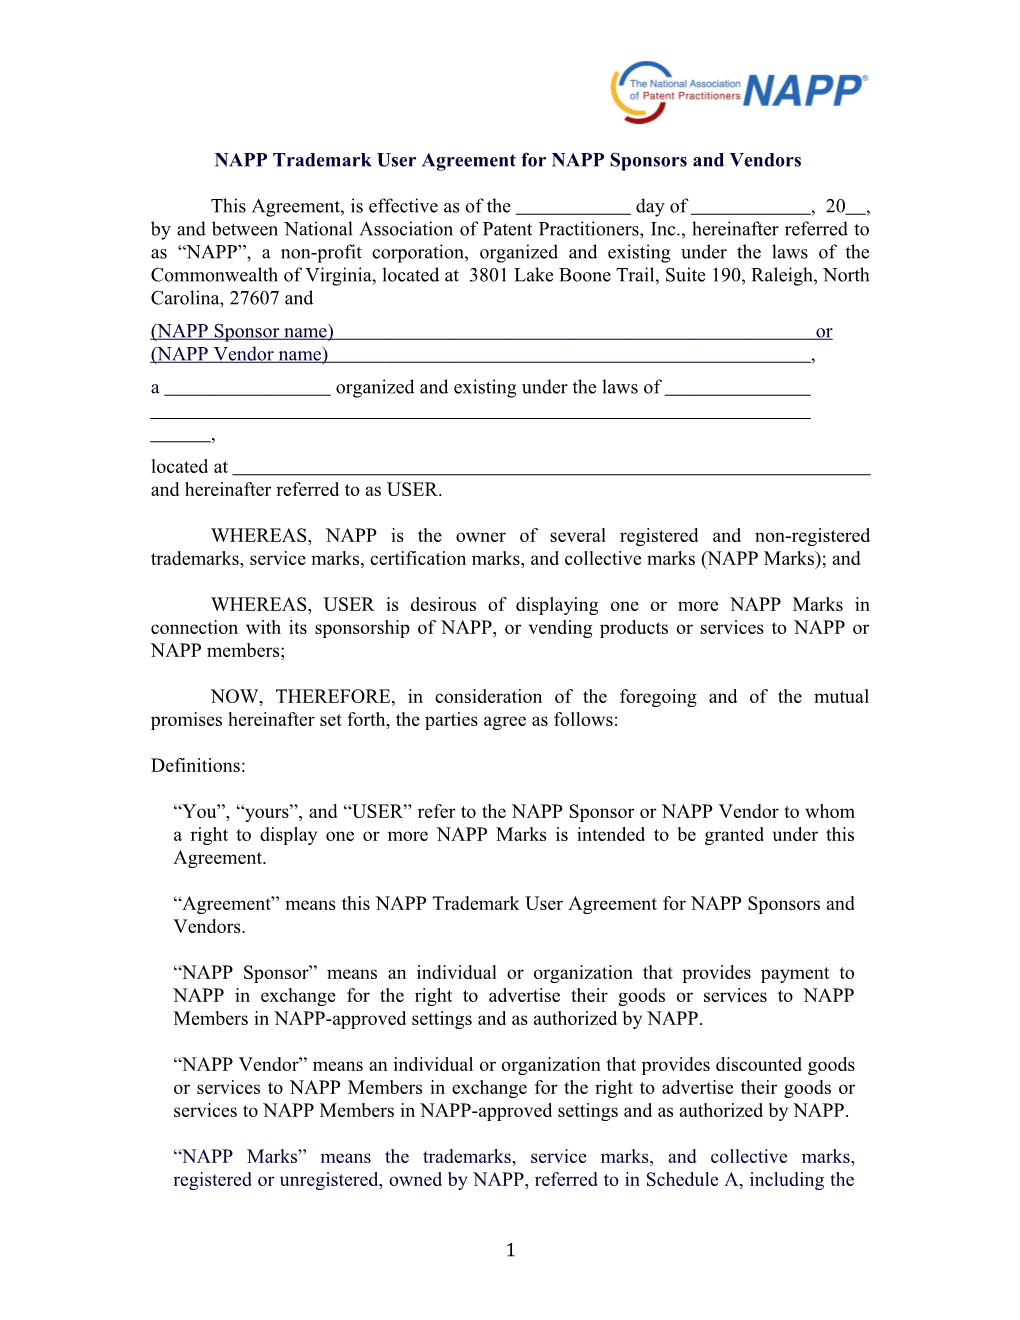 NAPP Trademark User Agreement for NAPP Sponsors and Vendors